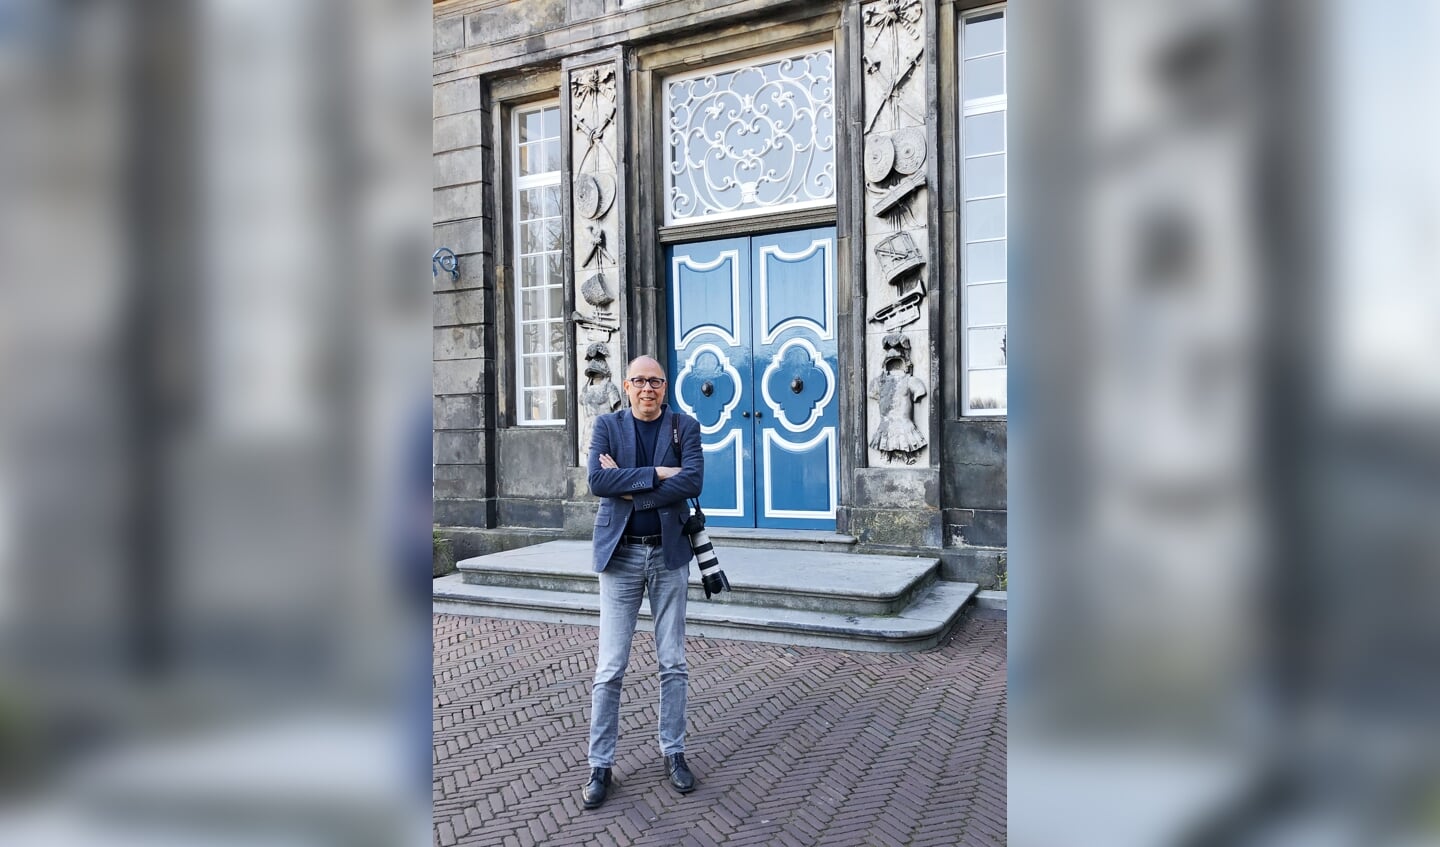 Was het oude stadhuis in Zutphen de aanleiding voor de unieke carrière van royaltyfotograaf Bernard Rübsamen? Foto: Emy Vesseur